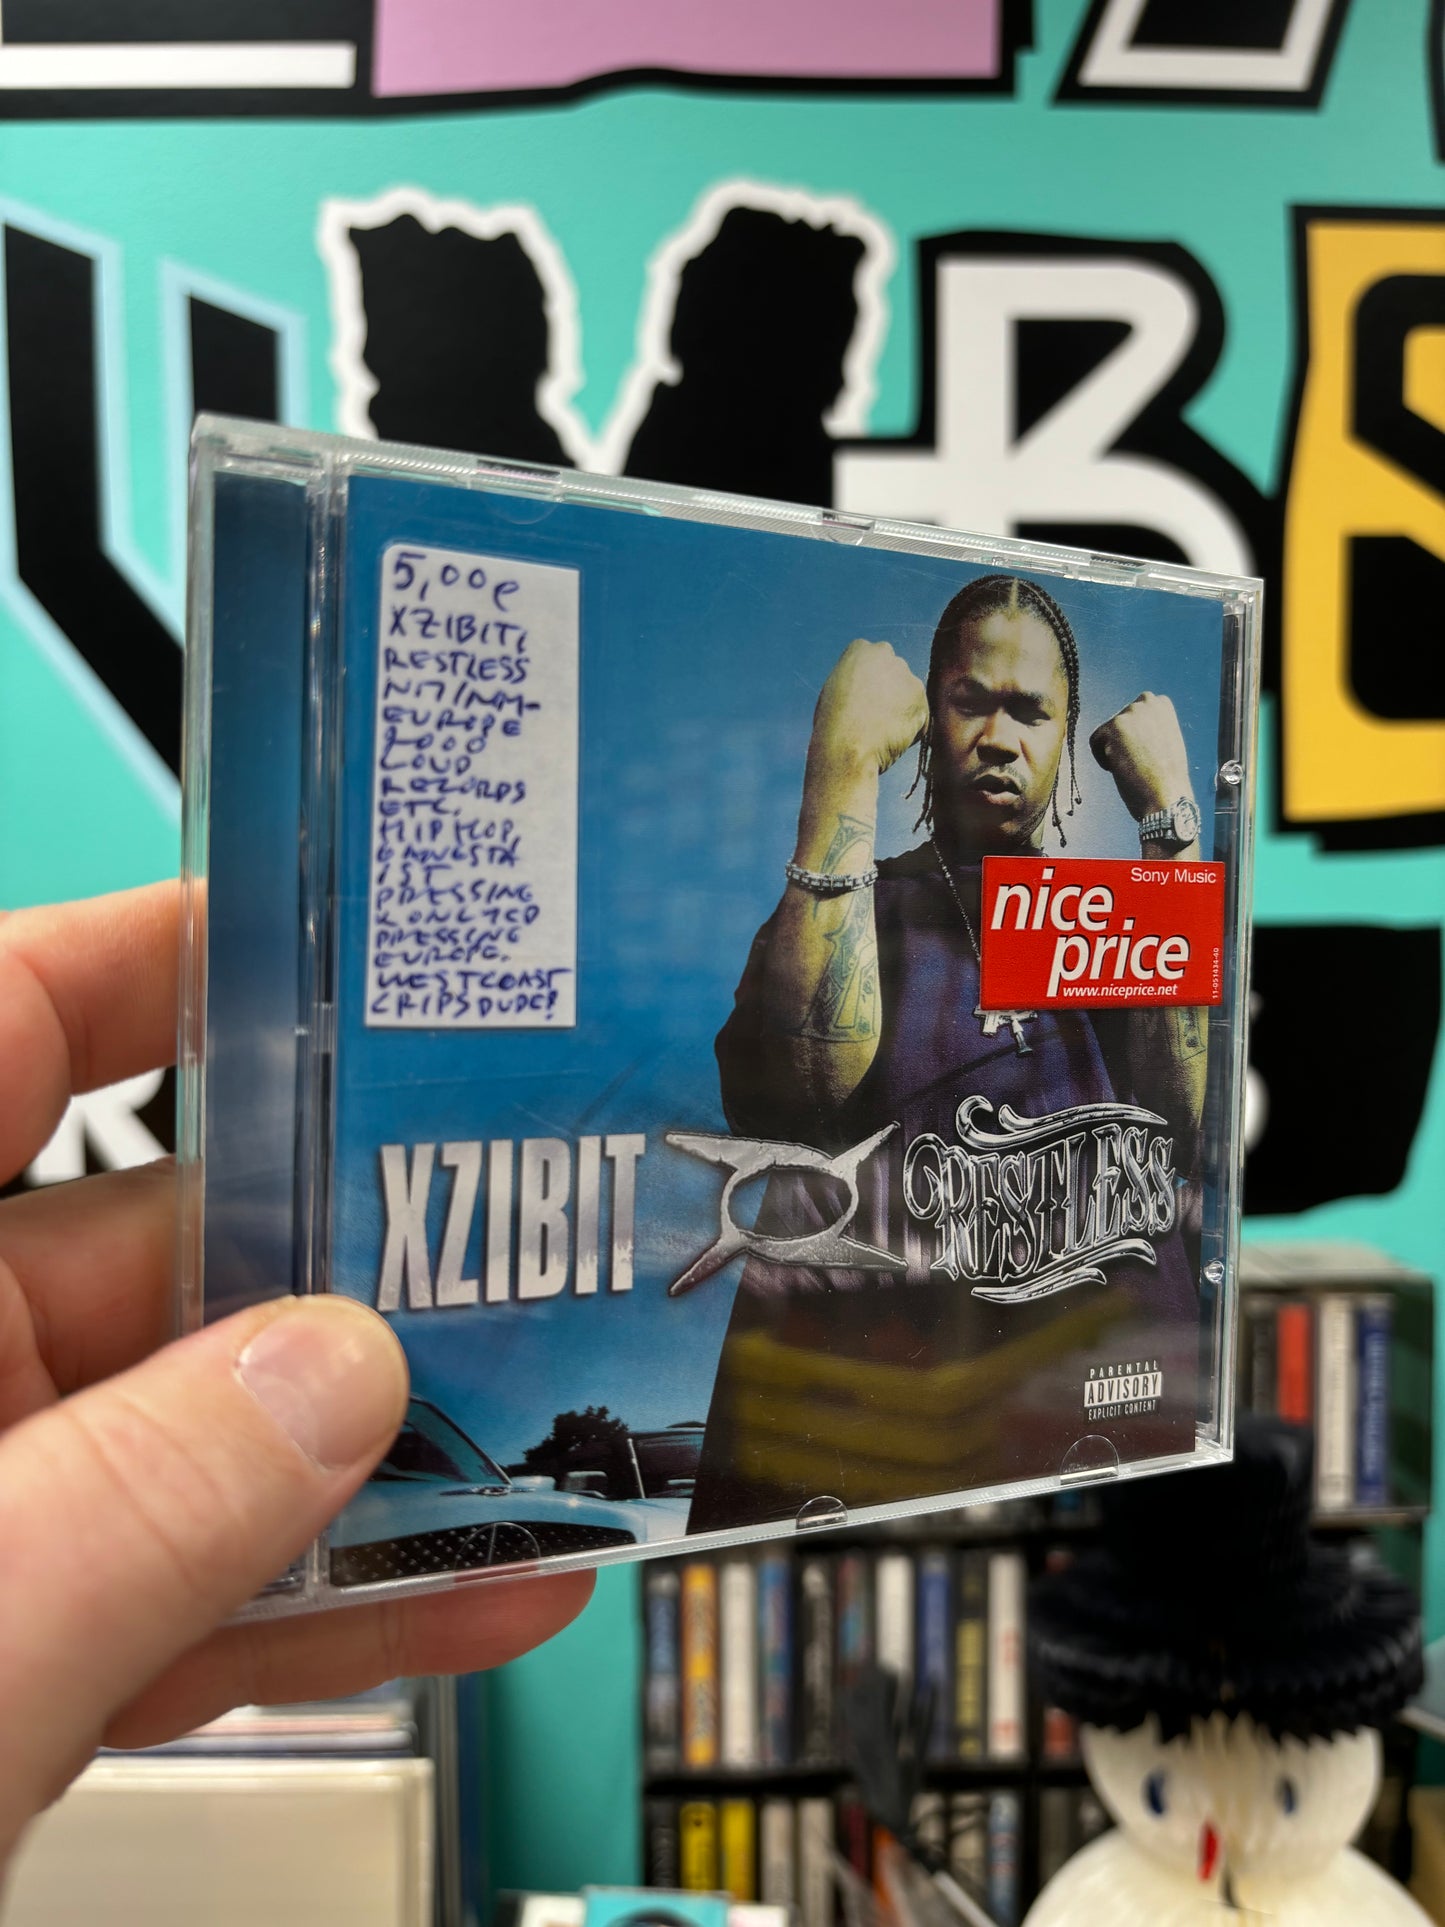 Xzibit: Restless, CD, OG, Only Europe CD pressing, Europe 2000